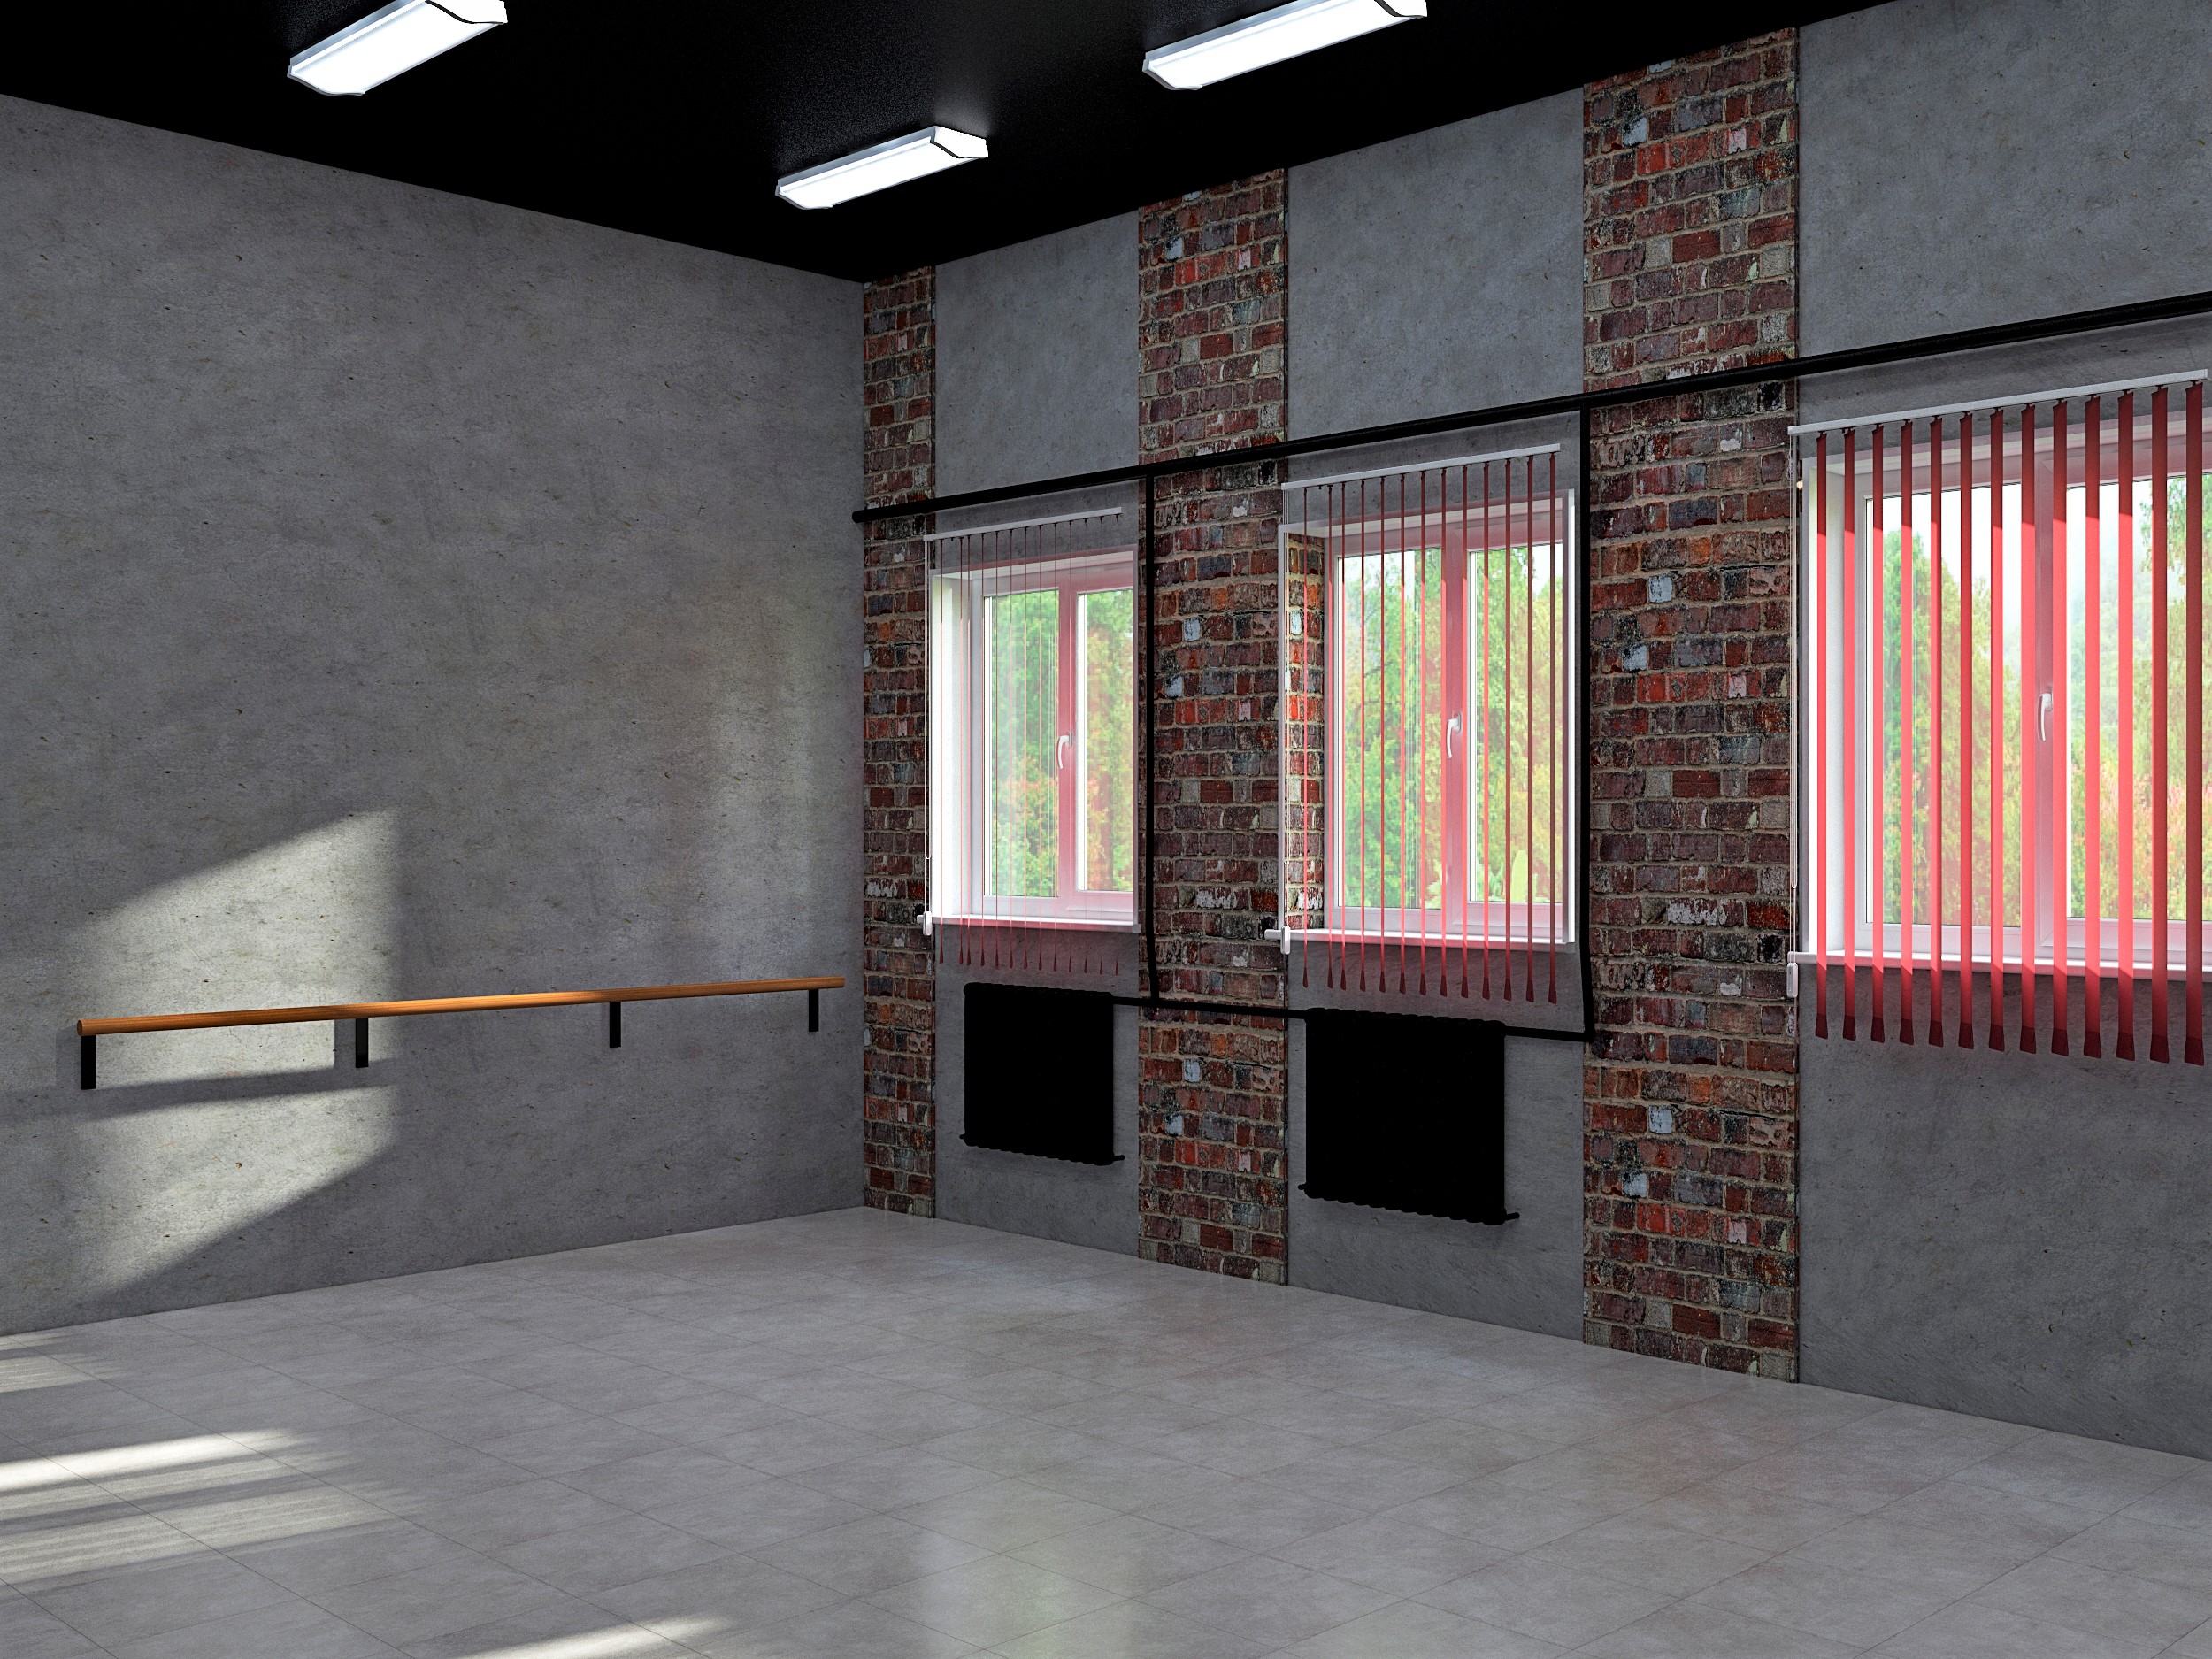 Projeto de design de um salão de dança em uma escola secundária na região de Moscou em 3d max vray 3.0 imagem